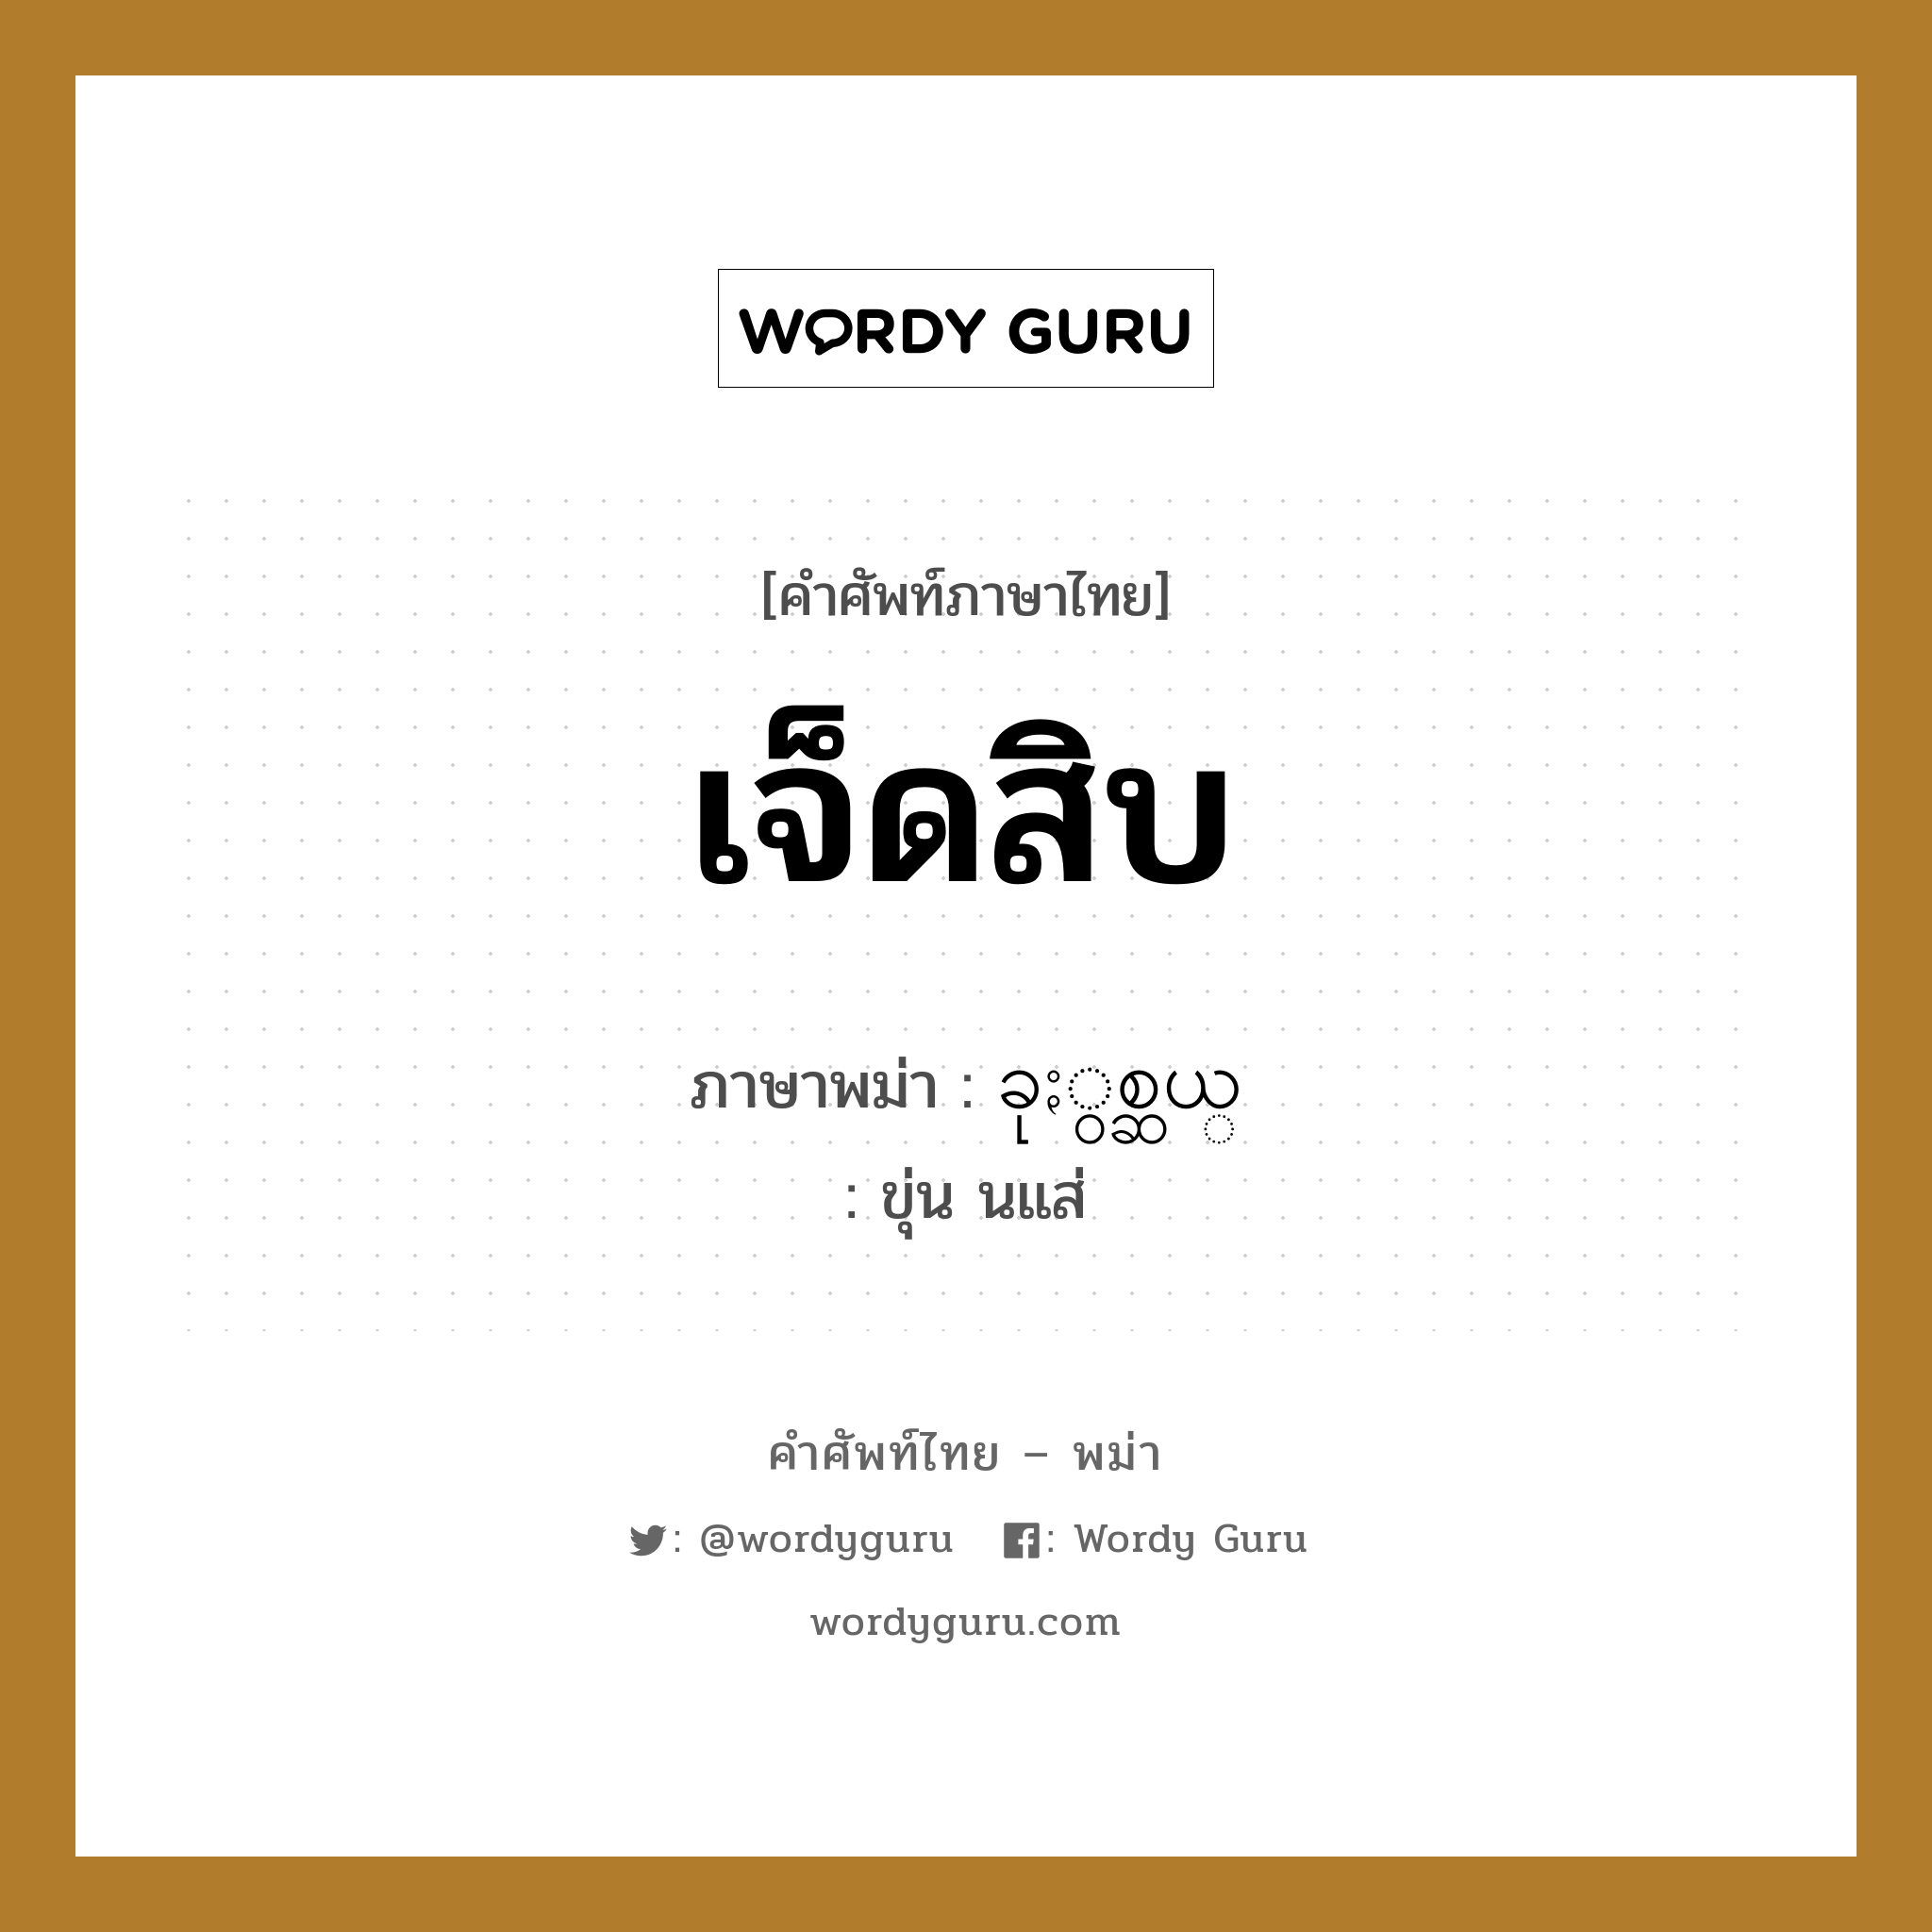 เจ็ดสิบ ภาษาพม่าคืออะไร, คำศัพท์ภาษาไทย - พม่า เจ็ดสิบ ภาษาพม่า ခုႏွစ္ဆယ္ หมวด หมวดตัวเลข ขุ่น นแส่ หมวด หมวดตัวเลข